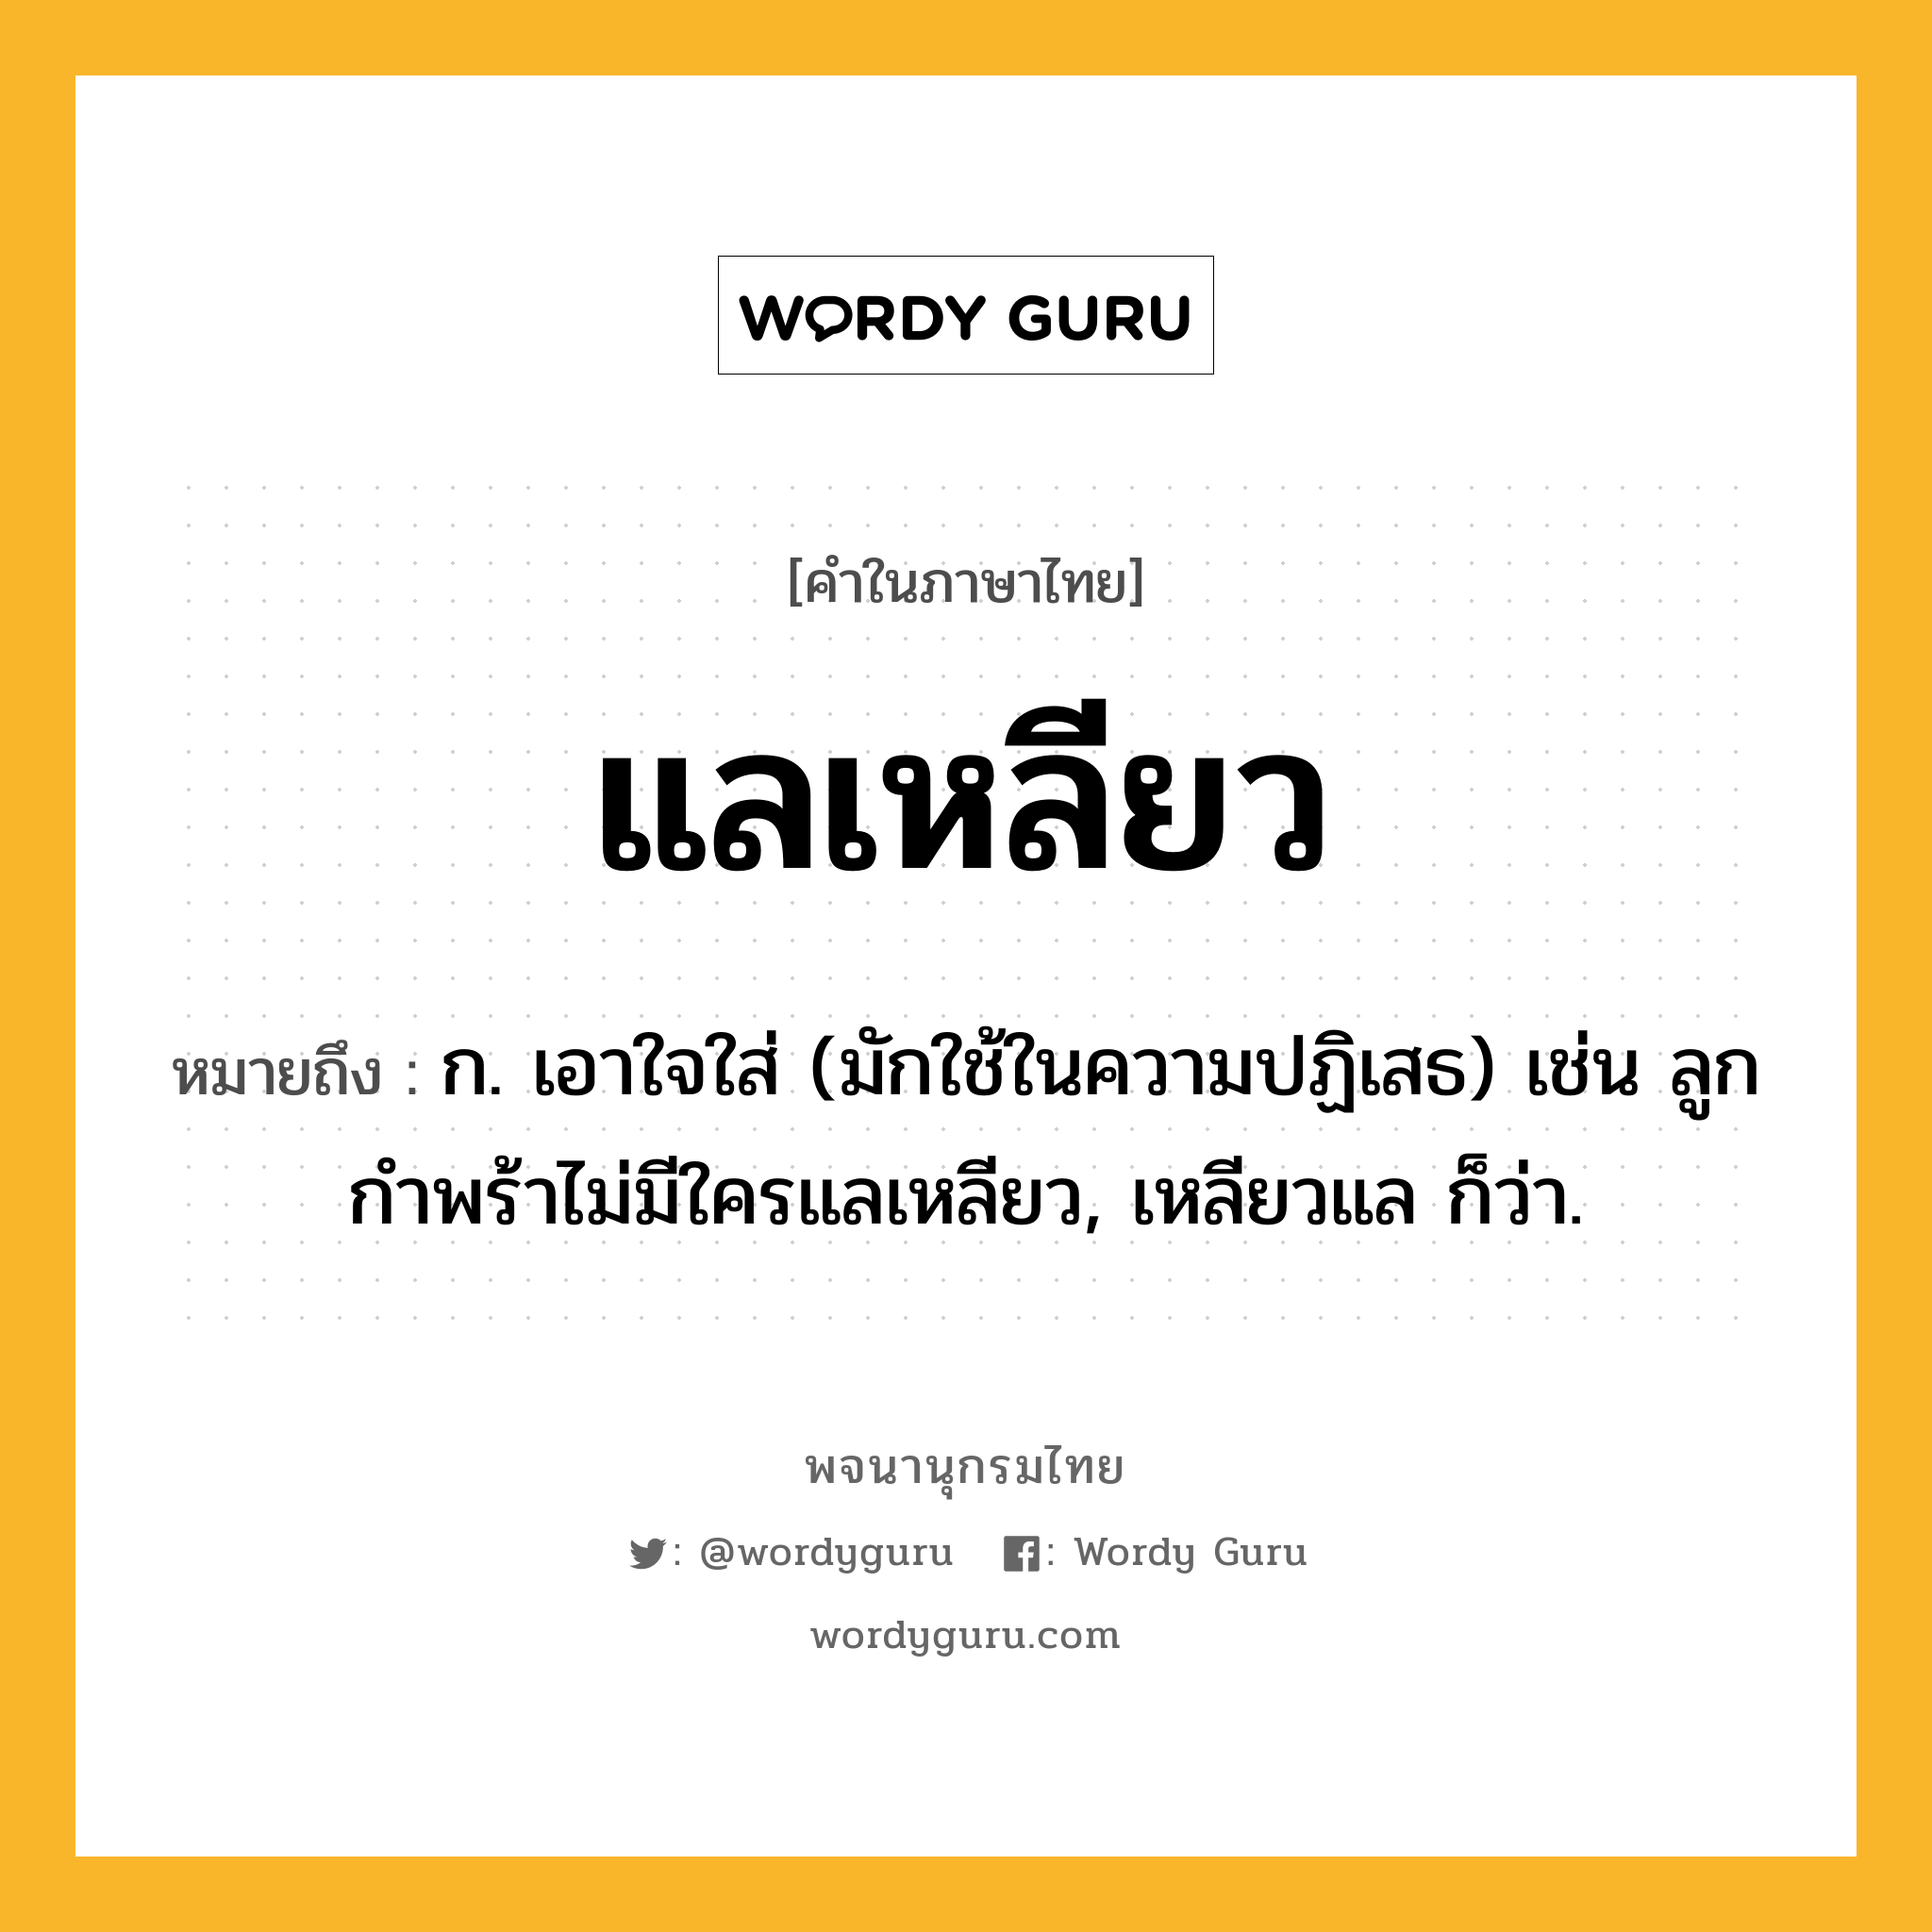 แลเหลียว หมายถึงอะไร?, คำในภาษาไทย แลเหลียว หมายถึง ก. เอาใจใส่ (มักใช้ในความปฏิเสธ) เช่น ลูกกำพร้าไม่มีใครแลเหลียว, เหลียวแล ก็ว่า.